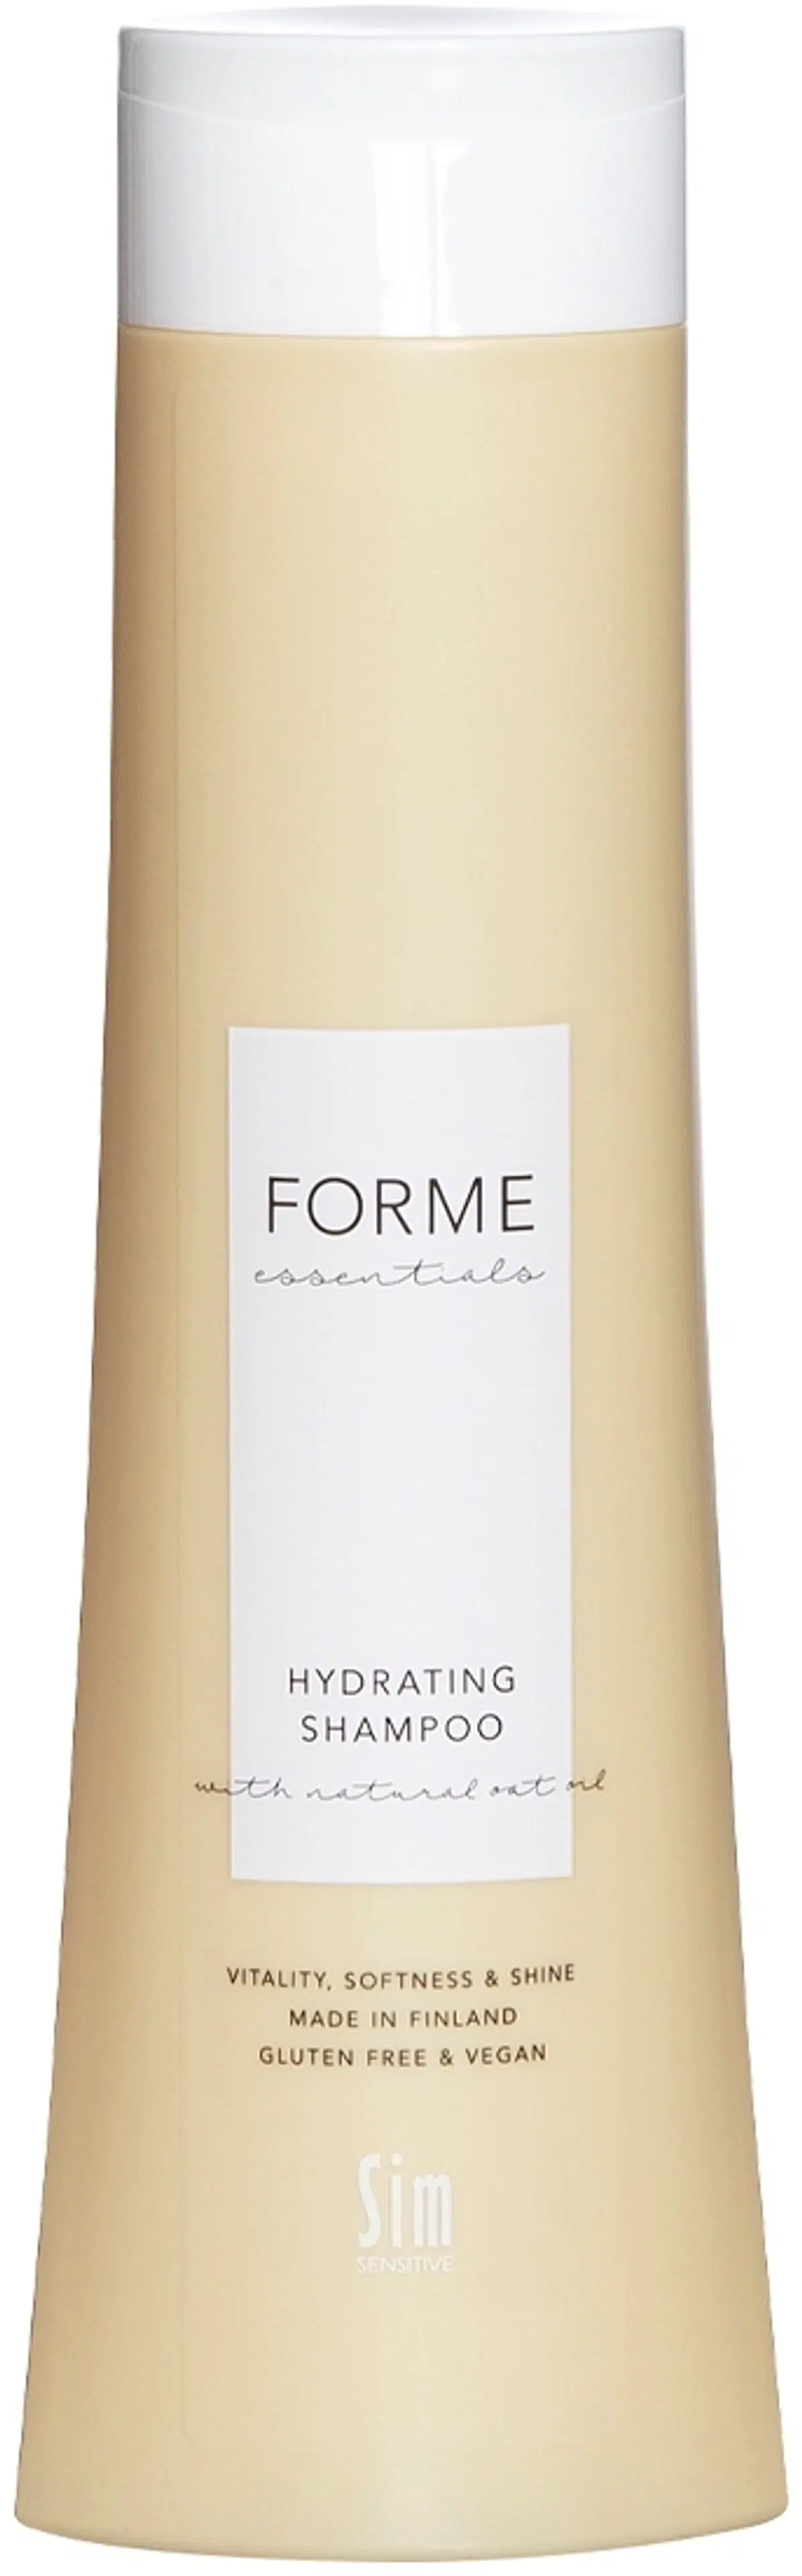 Forme Hydrating Shampoo 300 ml